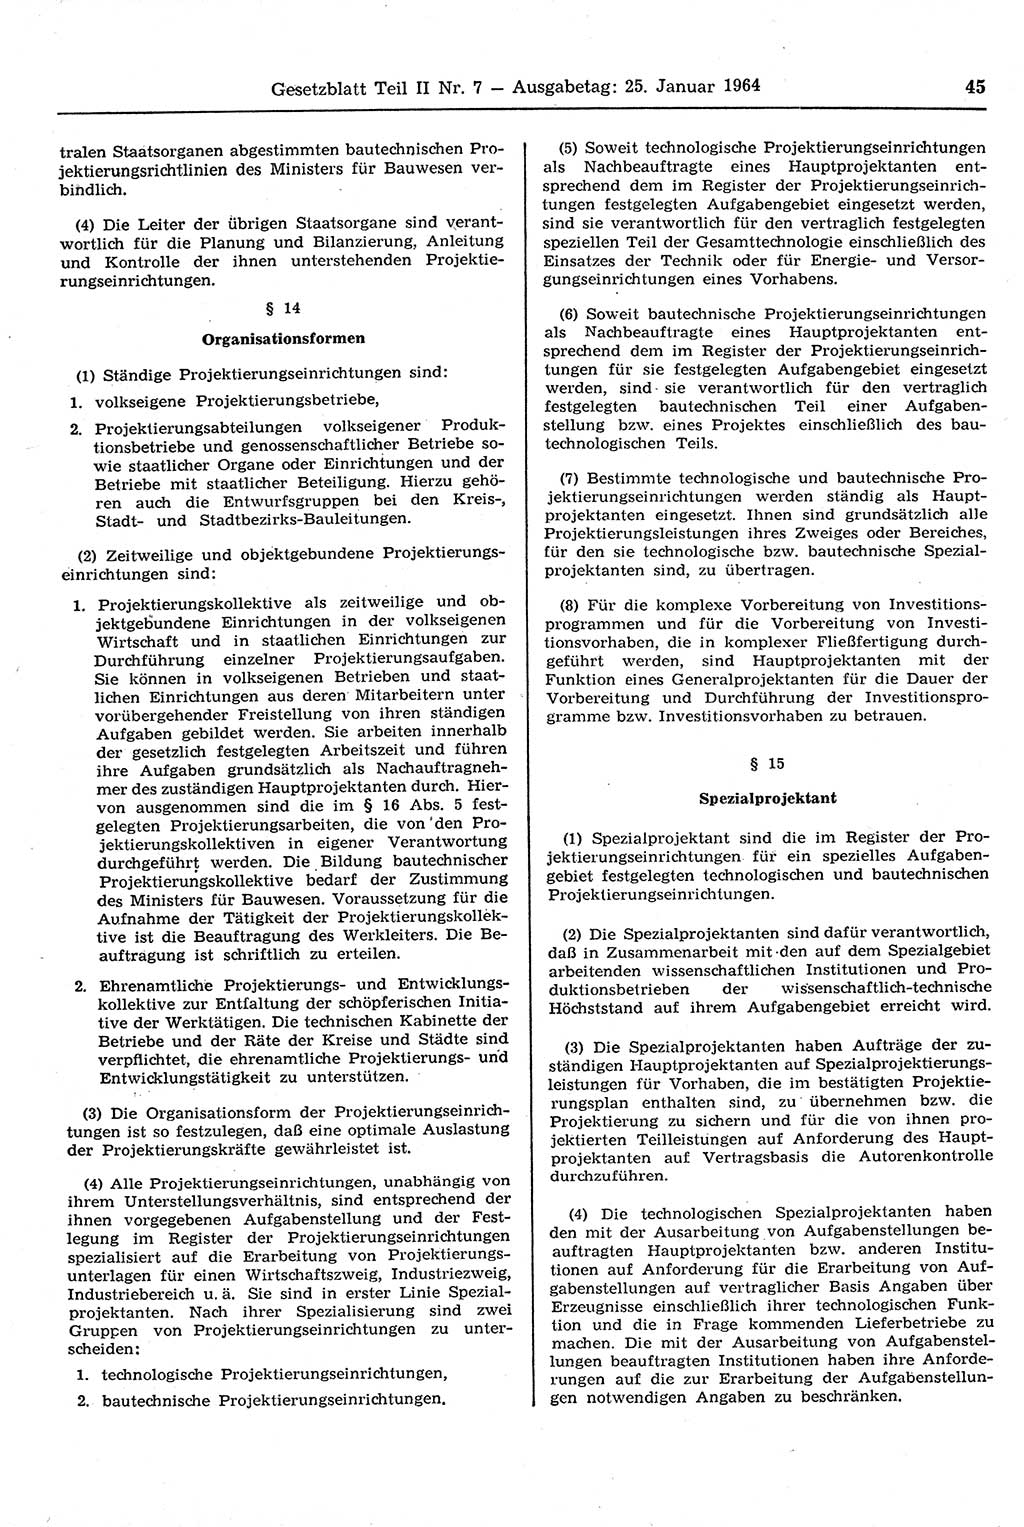 Gesetzblatt (GBl.) der Deutschen Demokratischen Republik (DDR) Teil ⅠⅠ 1964, Seite 45 (GBl. DDR ⅠⅠ 1964, S. 45)